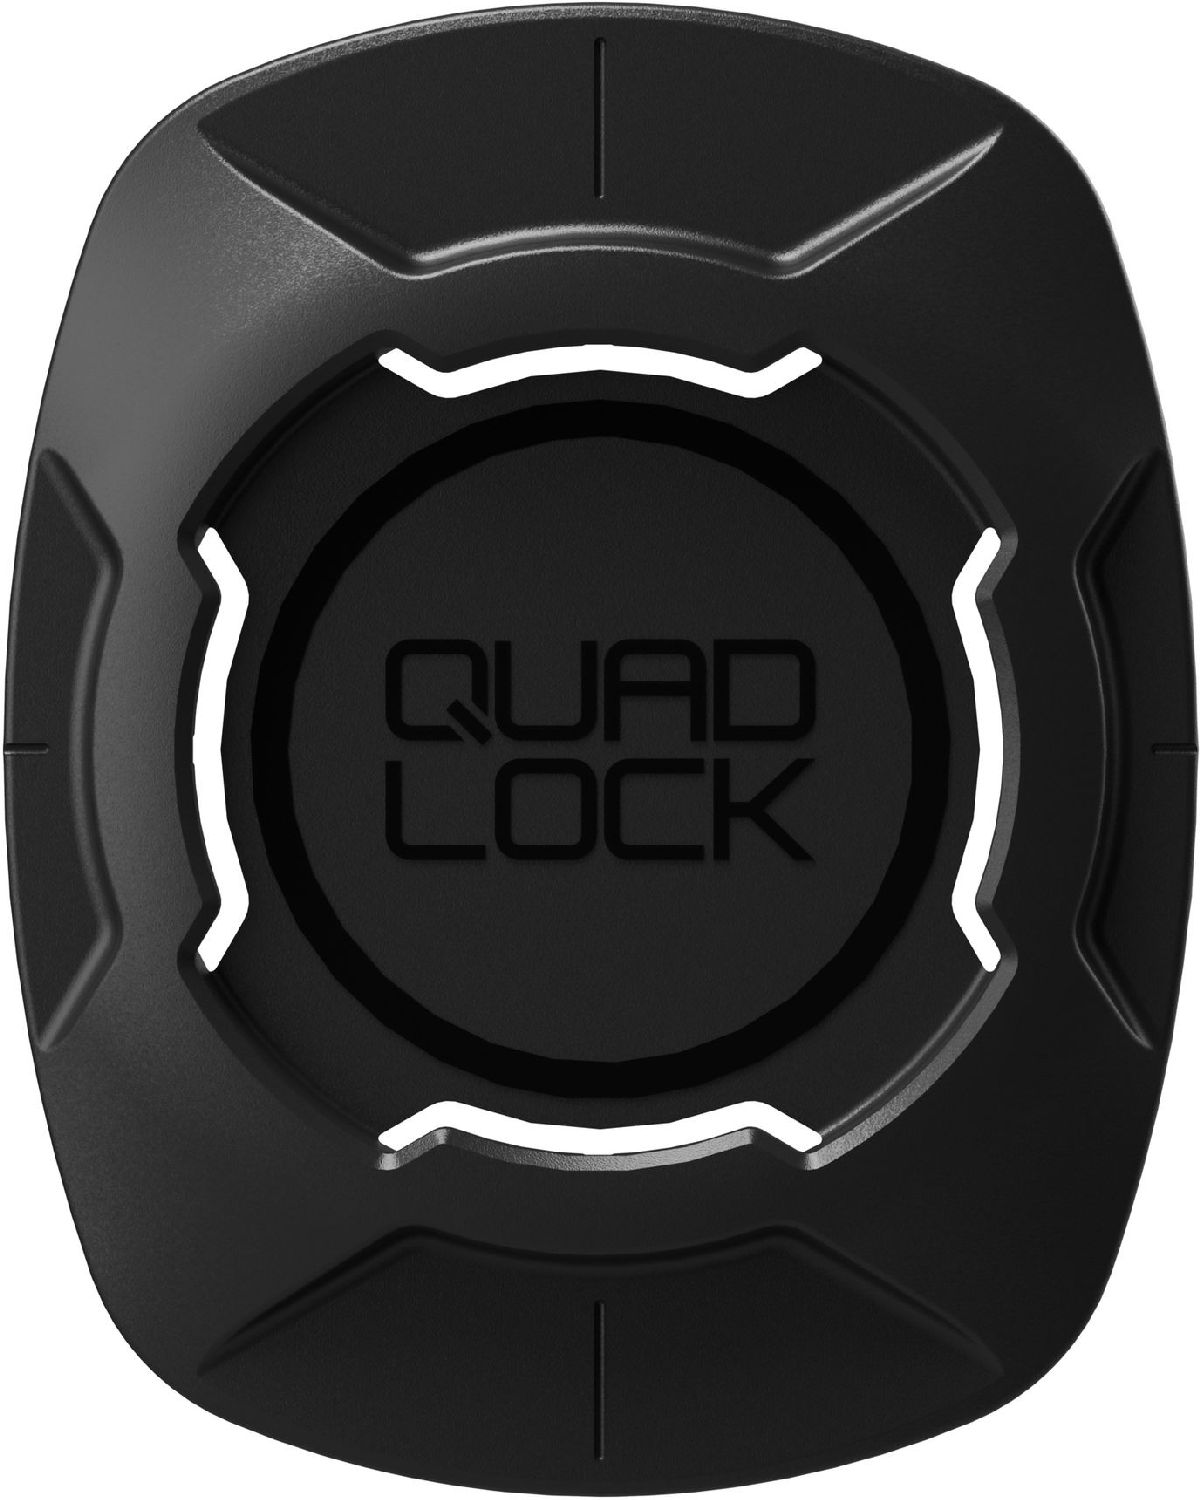 Quad Lock Universal